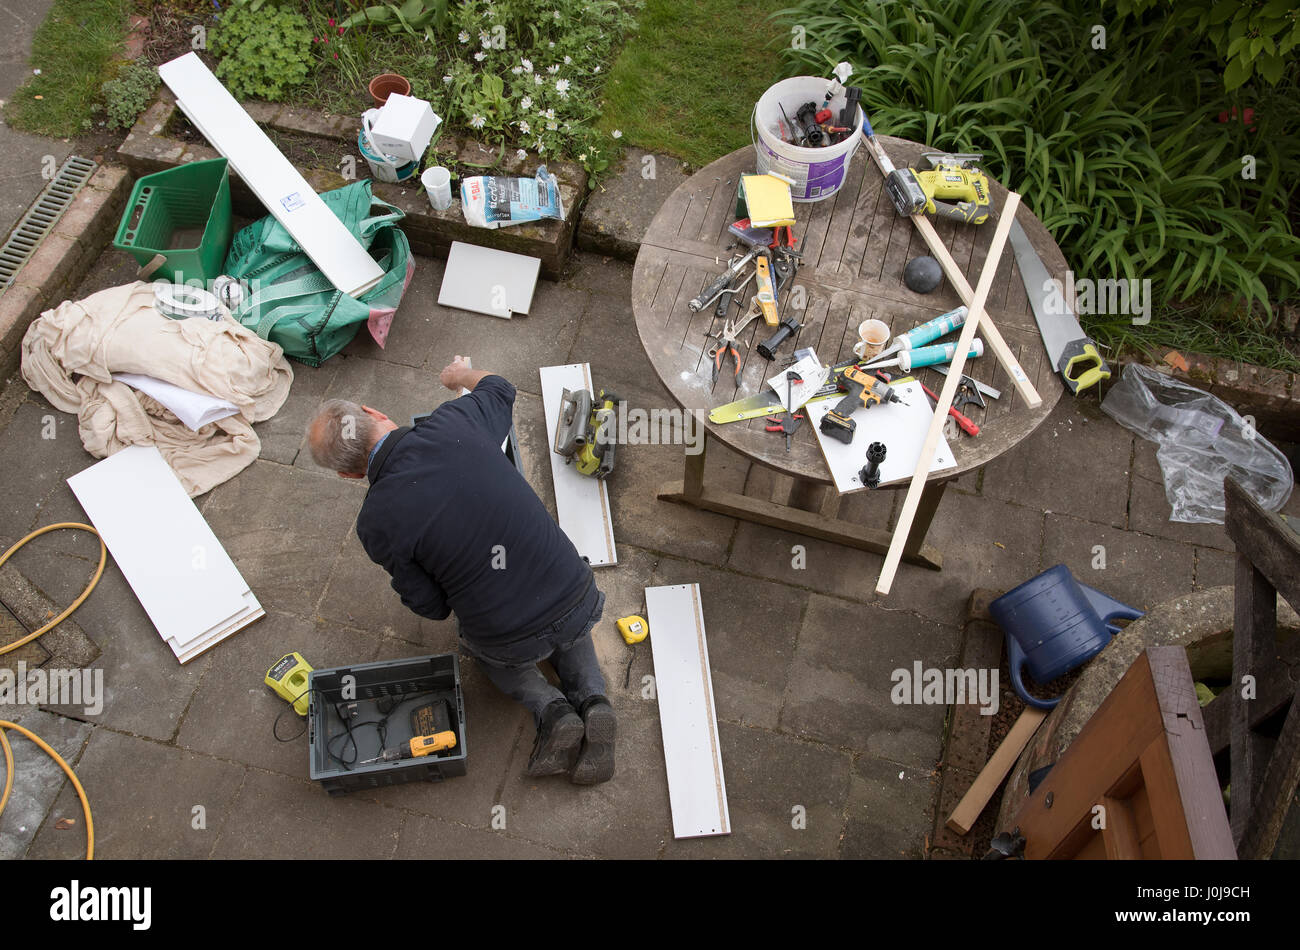 Ein Überblick über einen Handwerker engagiert in einige DIY arbeiten auf der Gartenterrasse Stockfoto